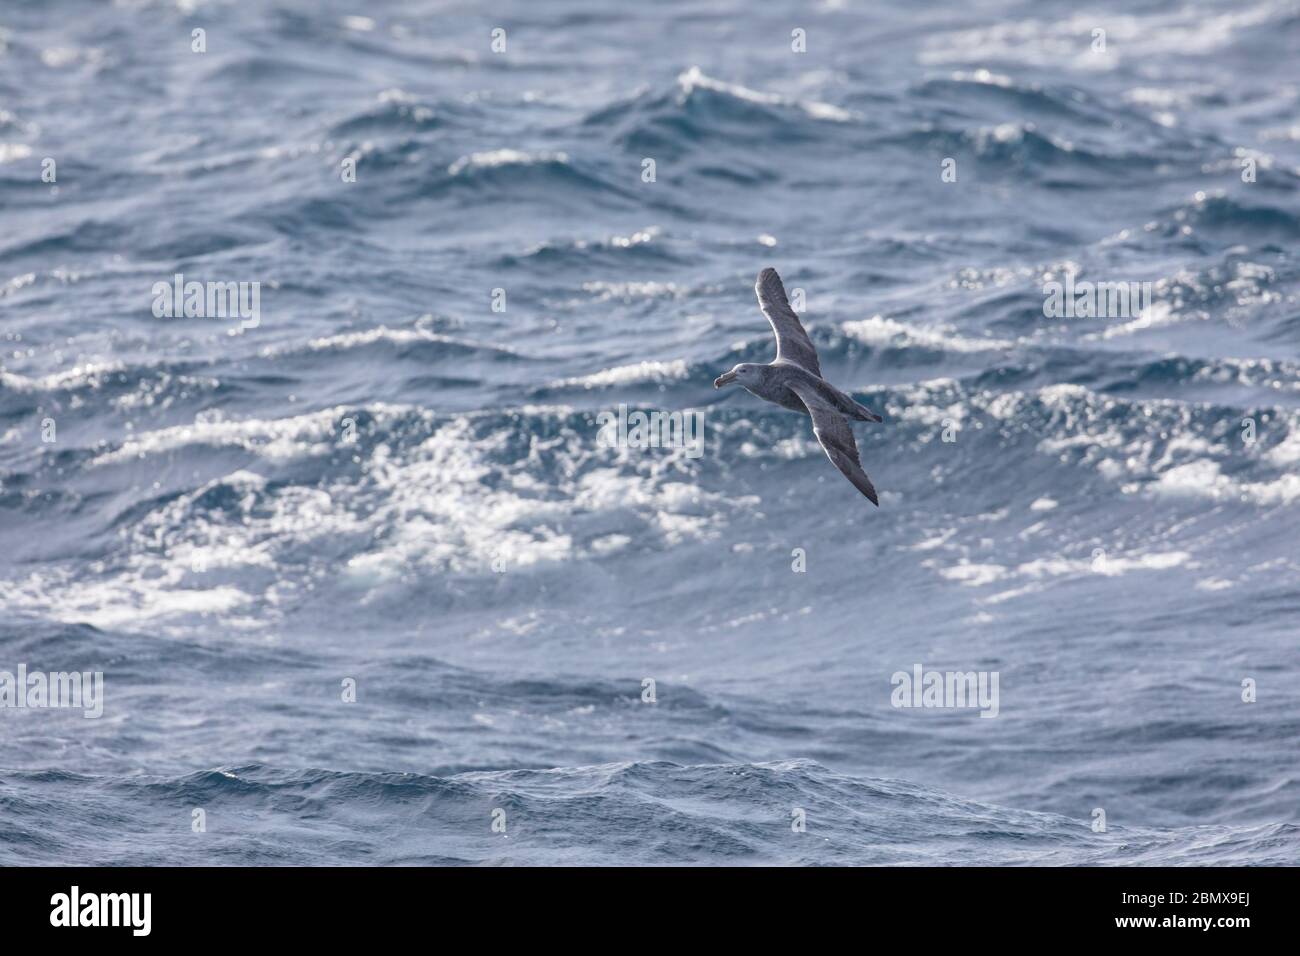 Der Agulhas-Strom des Indischen Ozeans vor der Küste Südafrikas zieht pelagische Seevögel wie den nördlichen Riesensturmvogel Macronectes halli an. Stockfoto